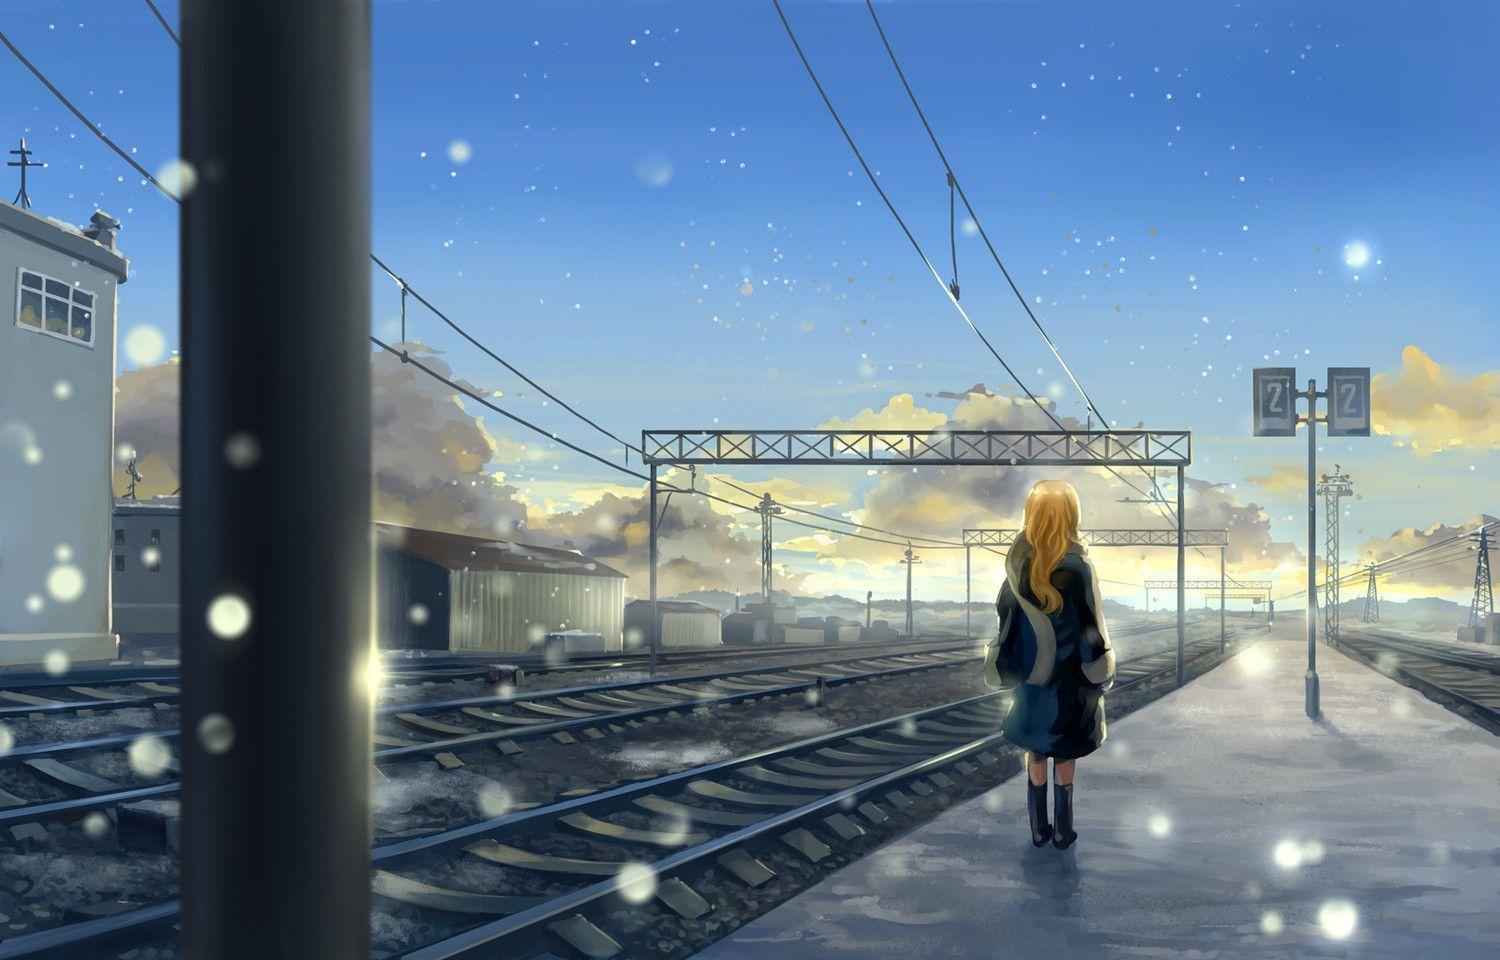 wallpaper anime snow scene